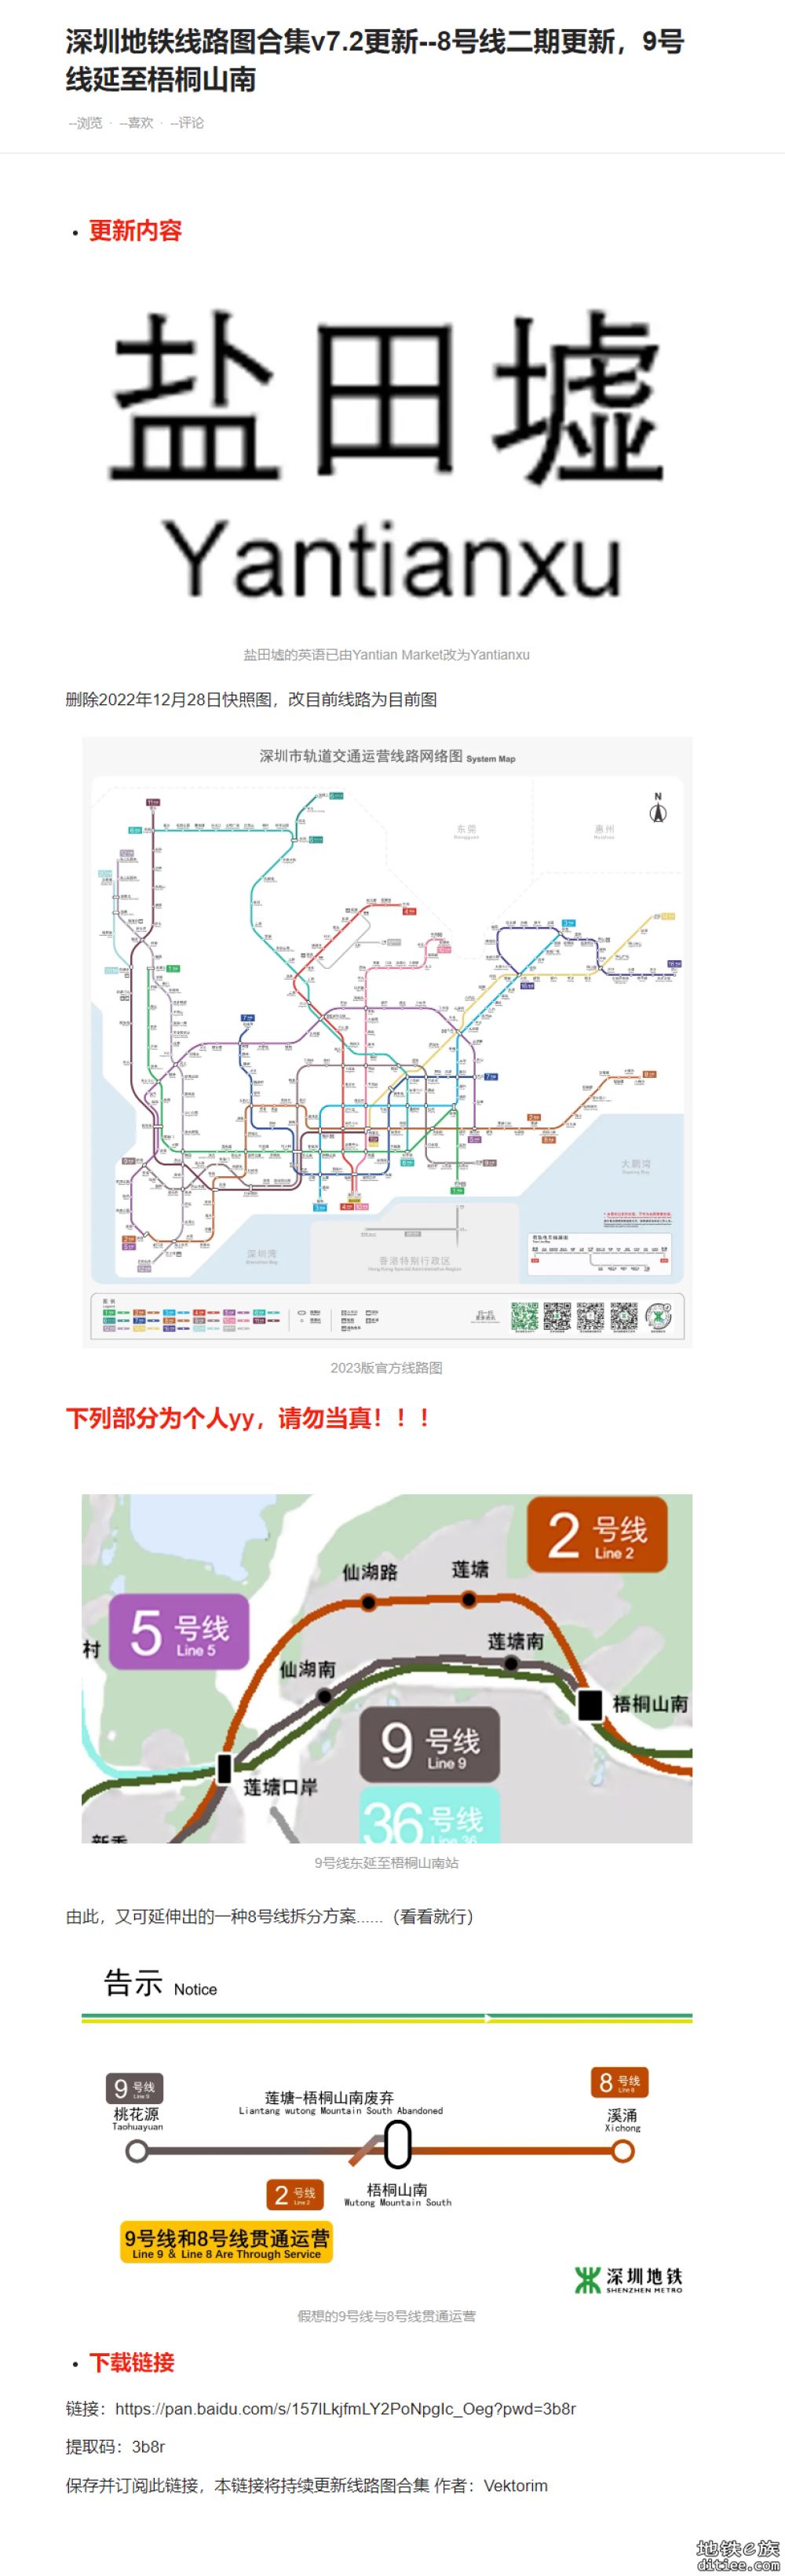 新版深圳地铁真实比例图及官方线路图，持续更新